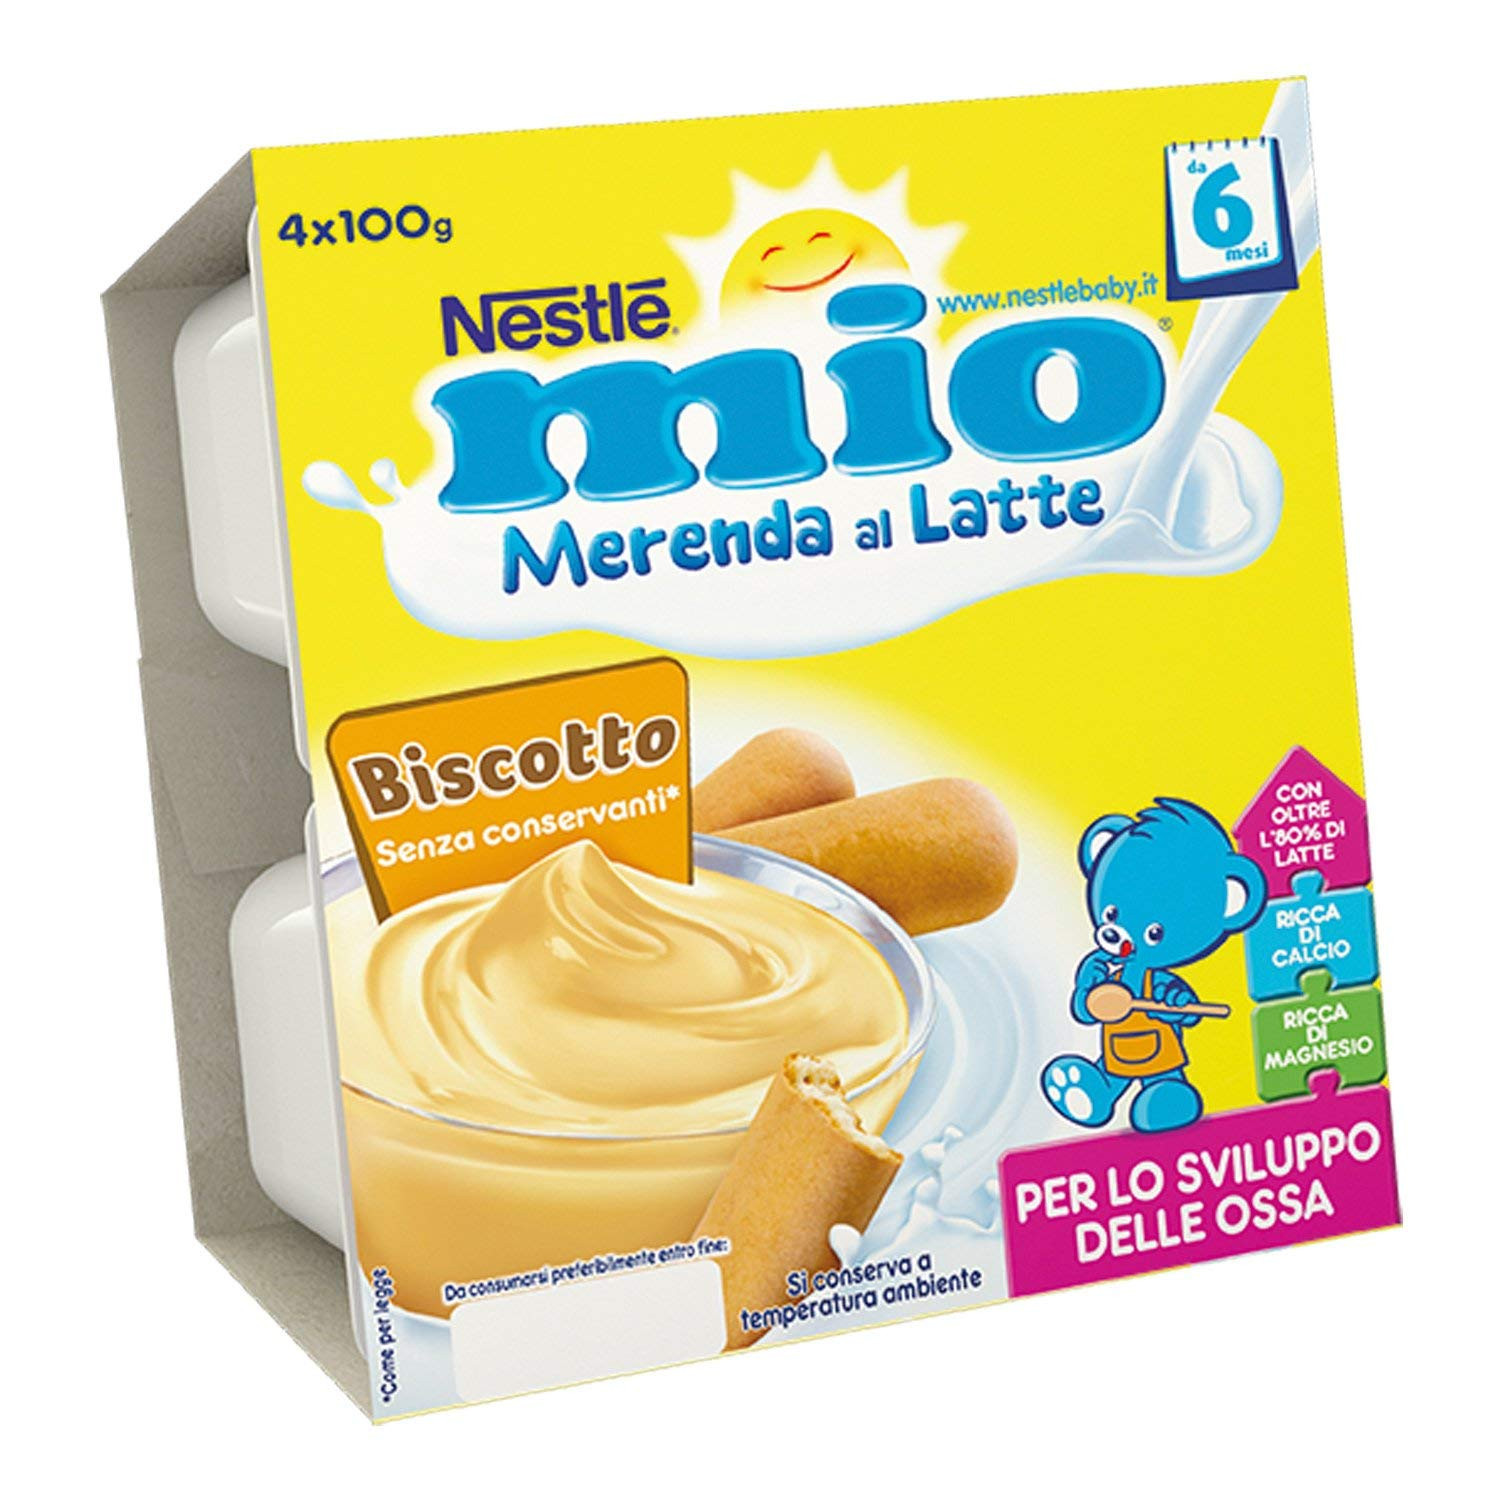 Merenda al latte Biscotto Nestlé mio : Recensioni